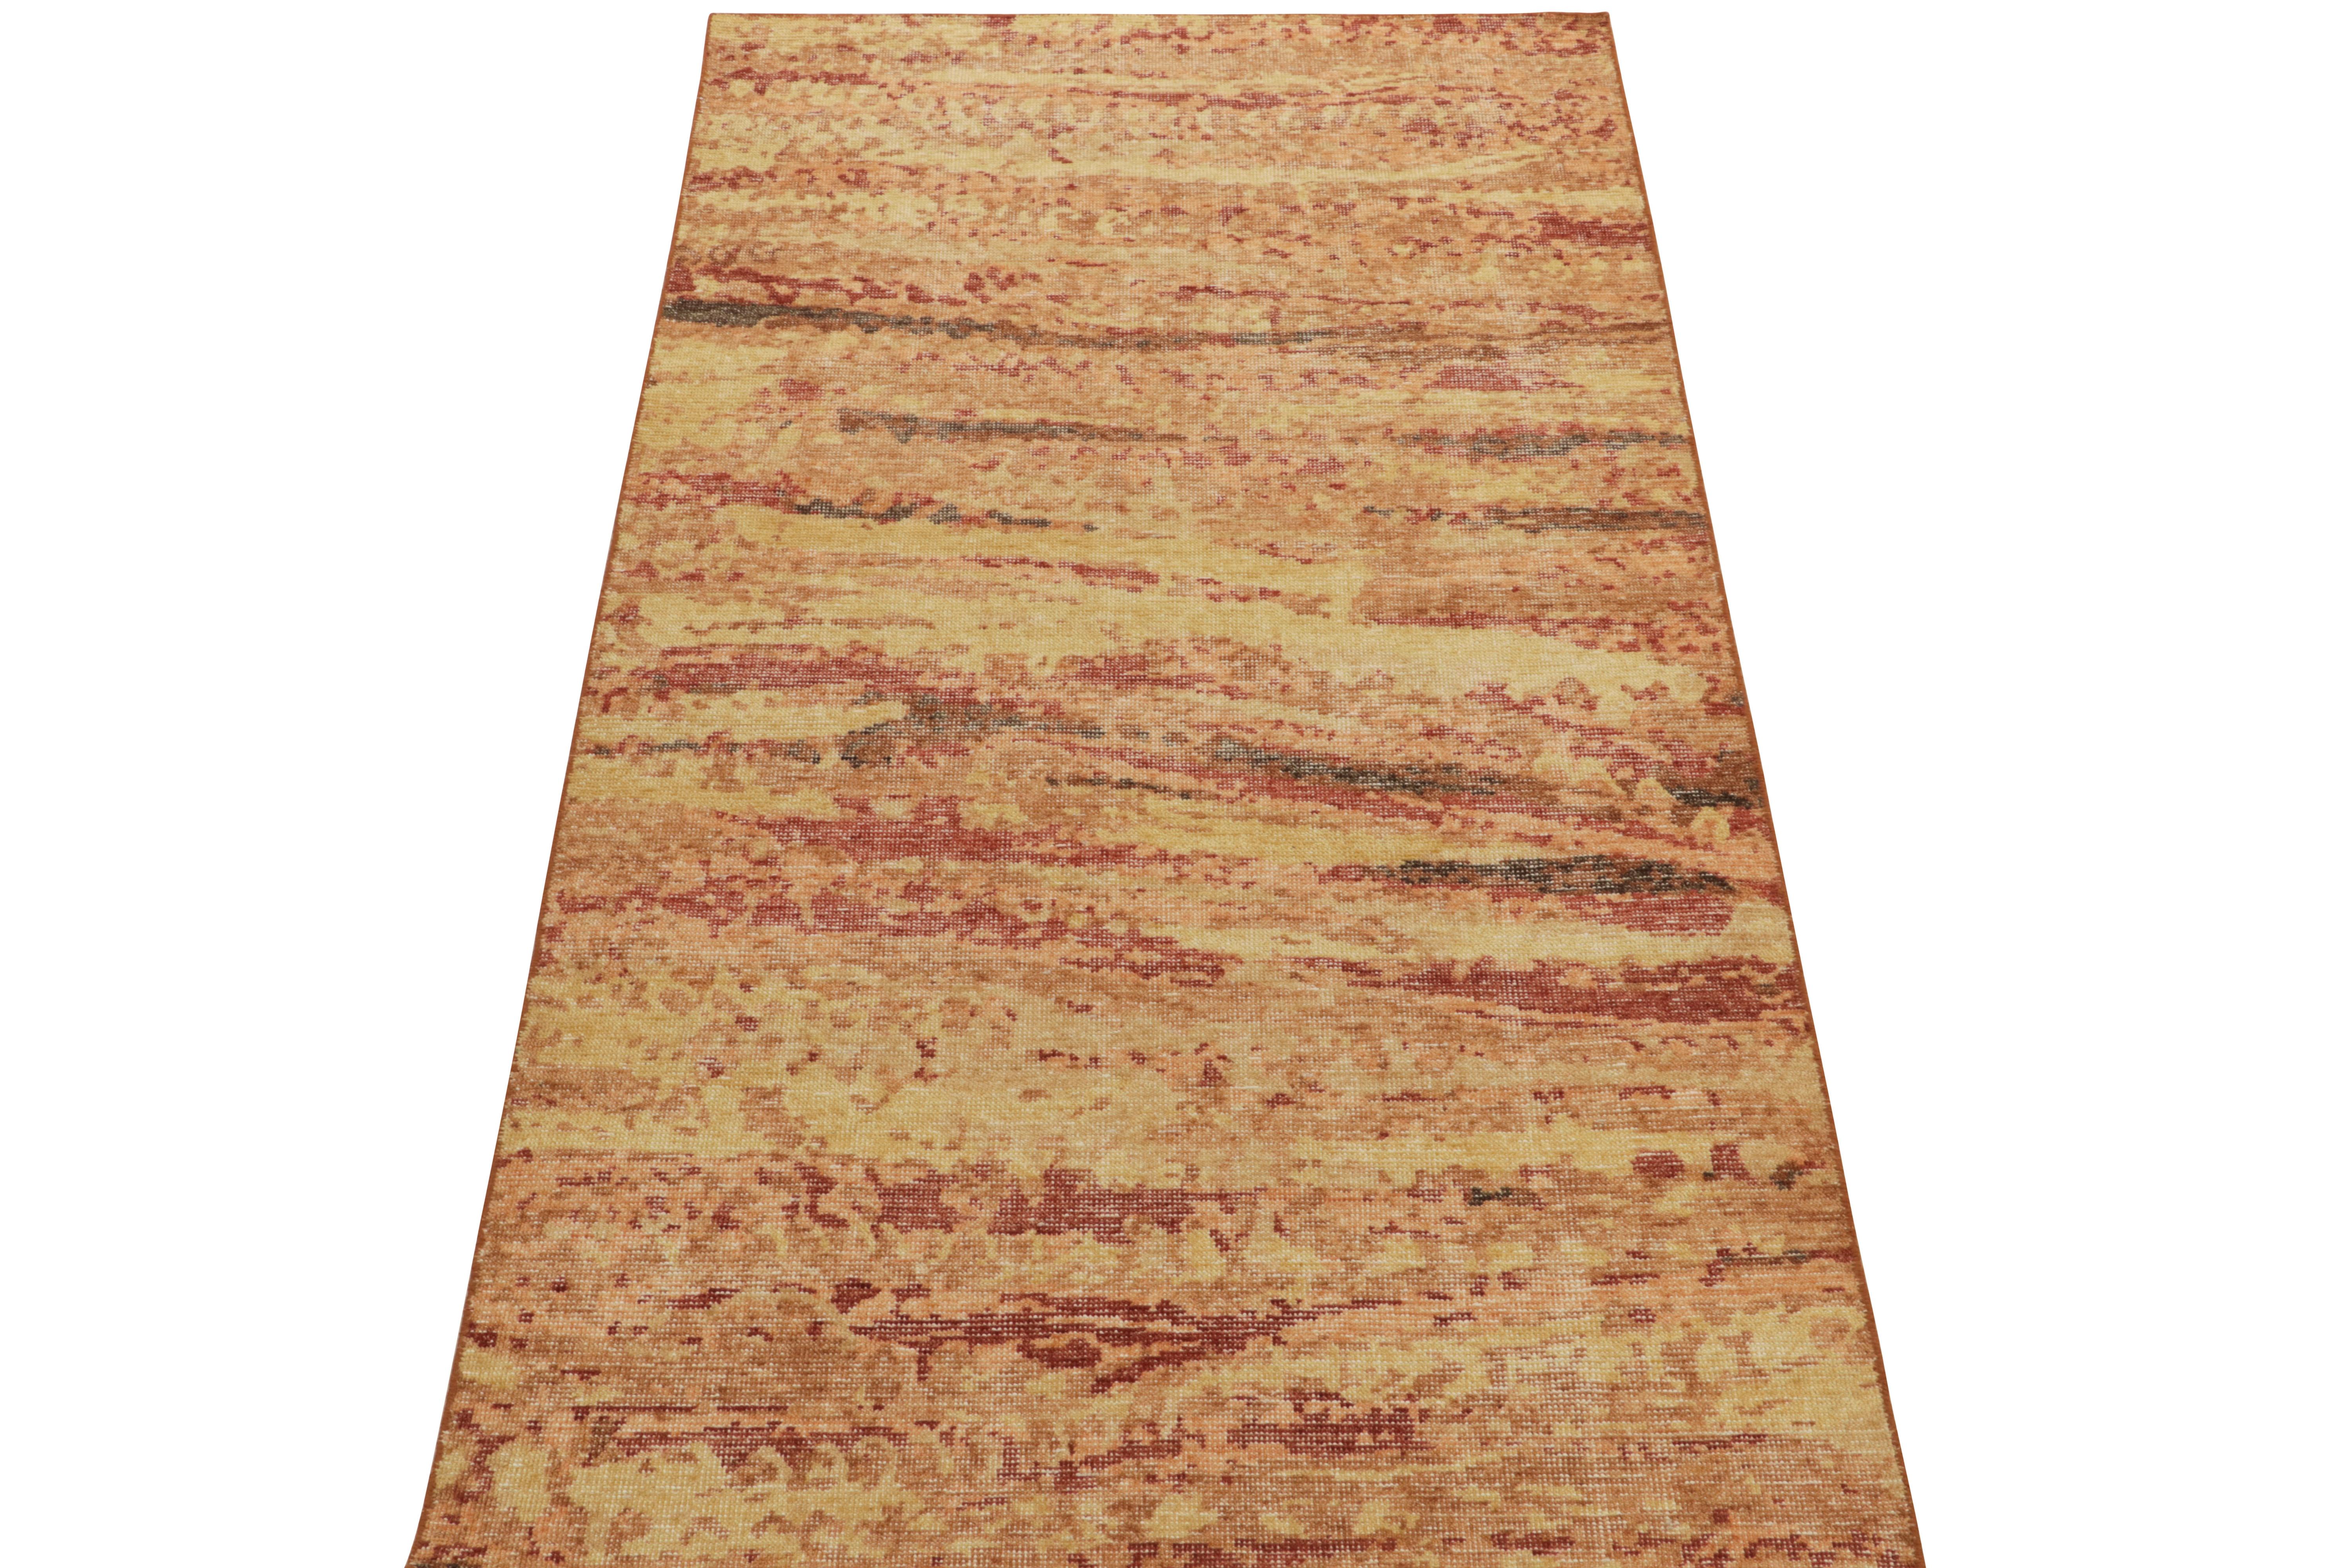 Issu de la collection Homage de Rug & Kilim, ce tapis abstrait 4 x 8 de style vieilli présente un jeu chaleureux et vibrant de tons rouge écarlate, mandarine légère, or fondu et marron, pour une interprétation unique de cette célèbre ligne.